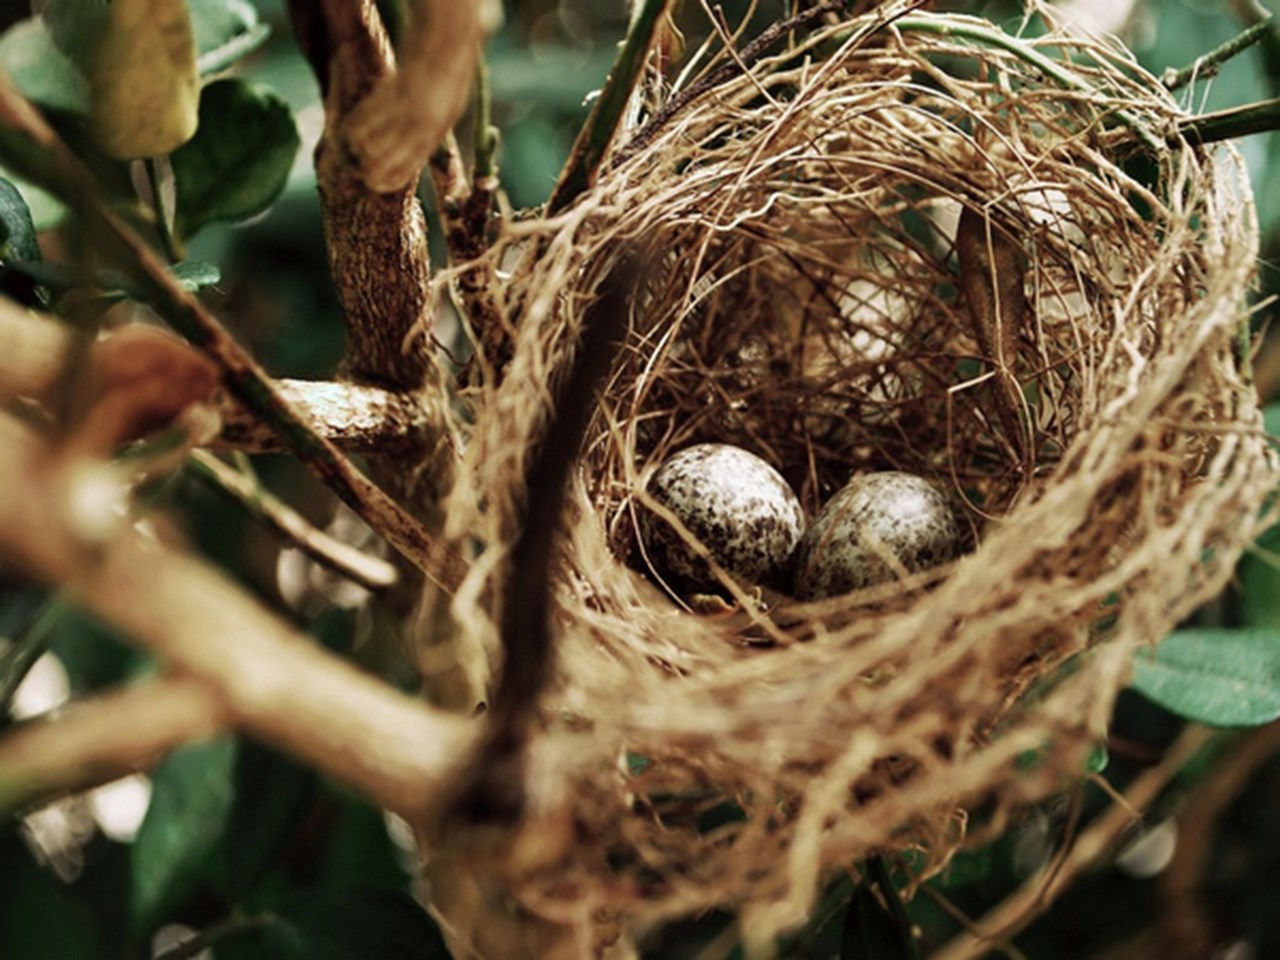 Sztuczne materiały w gniazdach mogą stanowić zagrożenie dla ptaków: badanie